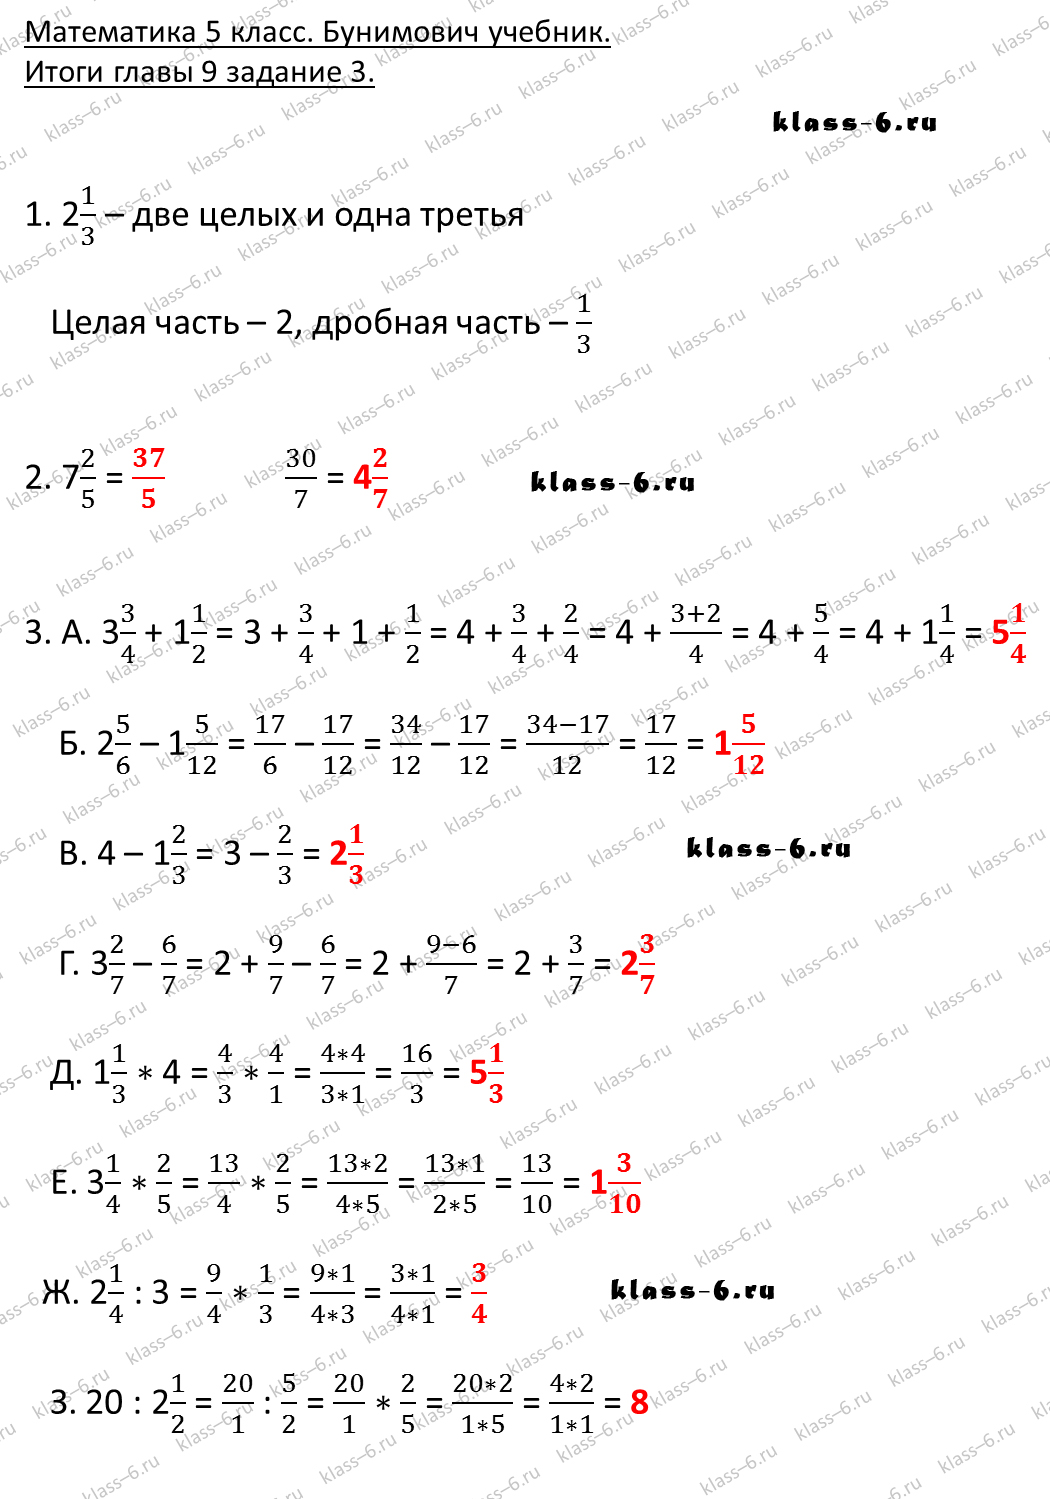 решебник и гдз по математике учебник Бунимович 5 класс итоги главы 9-3